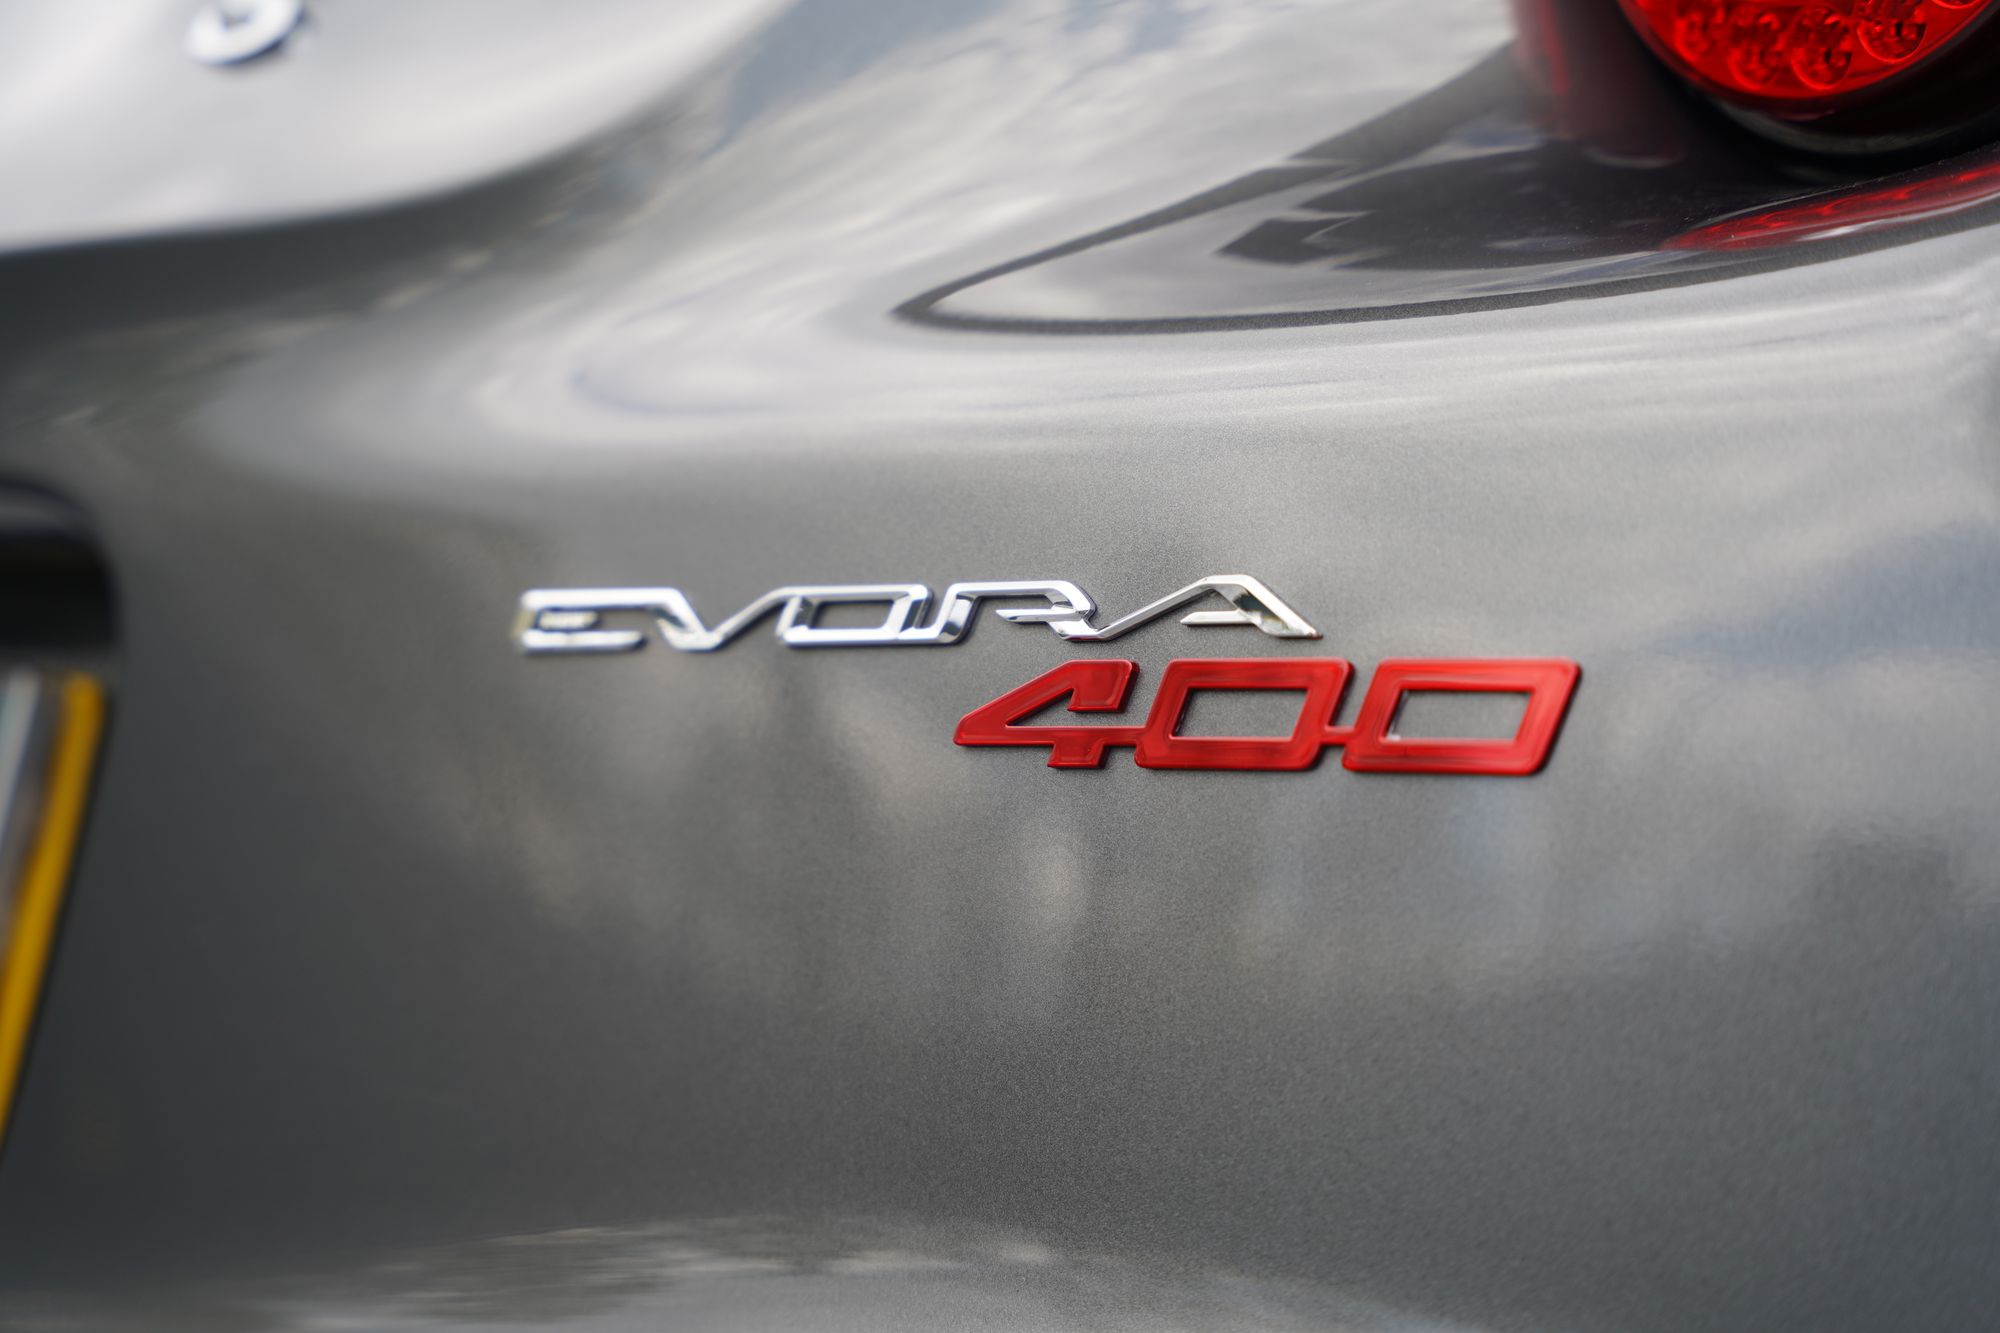 2016 Lotus Evora 400